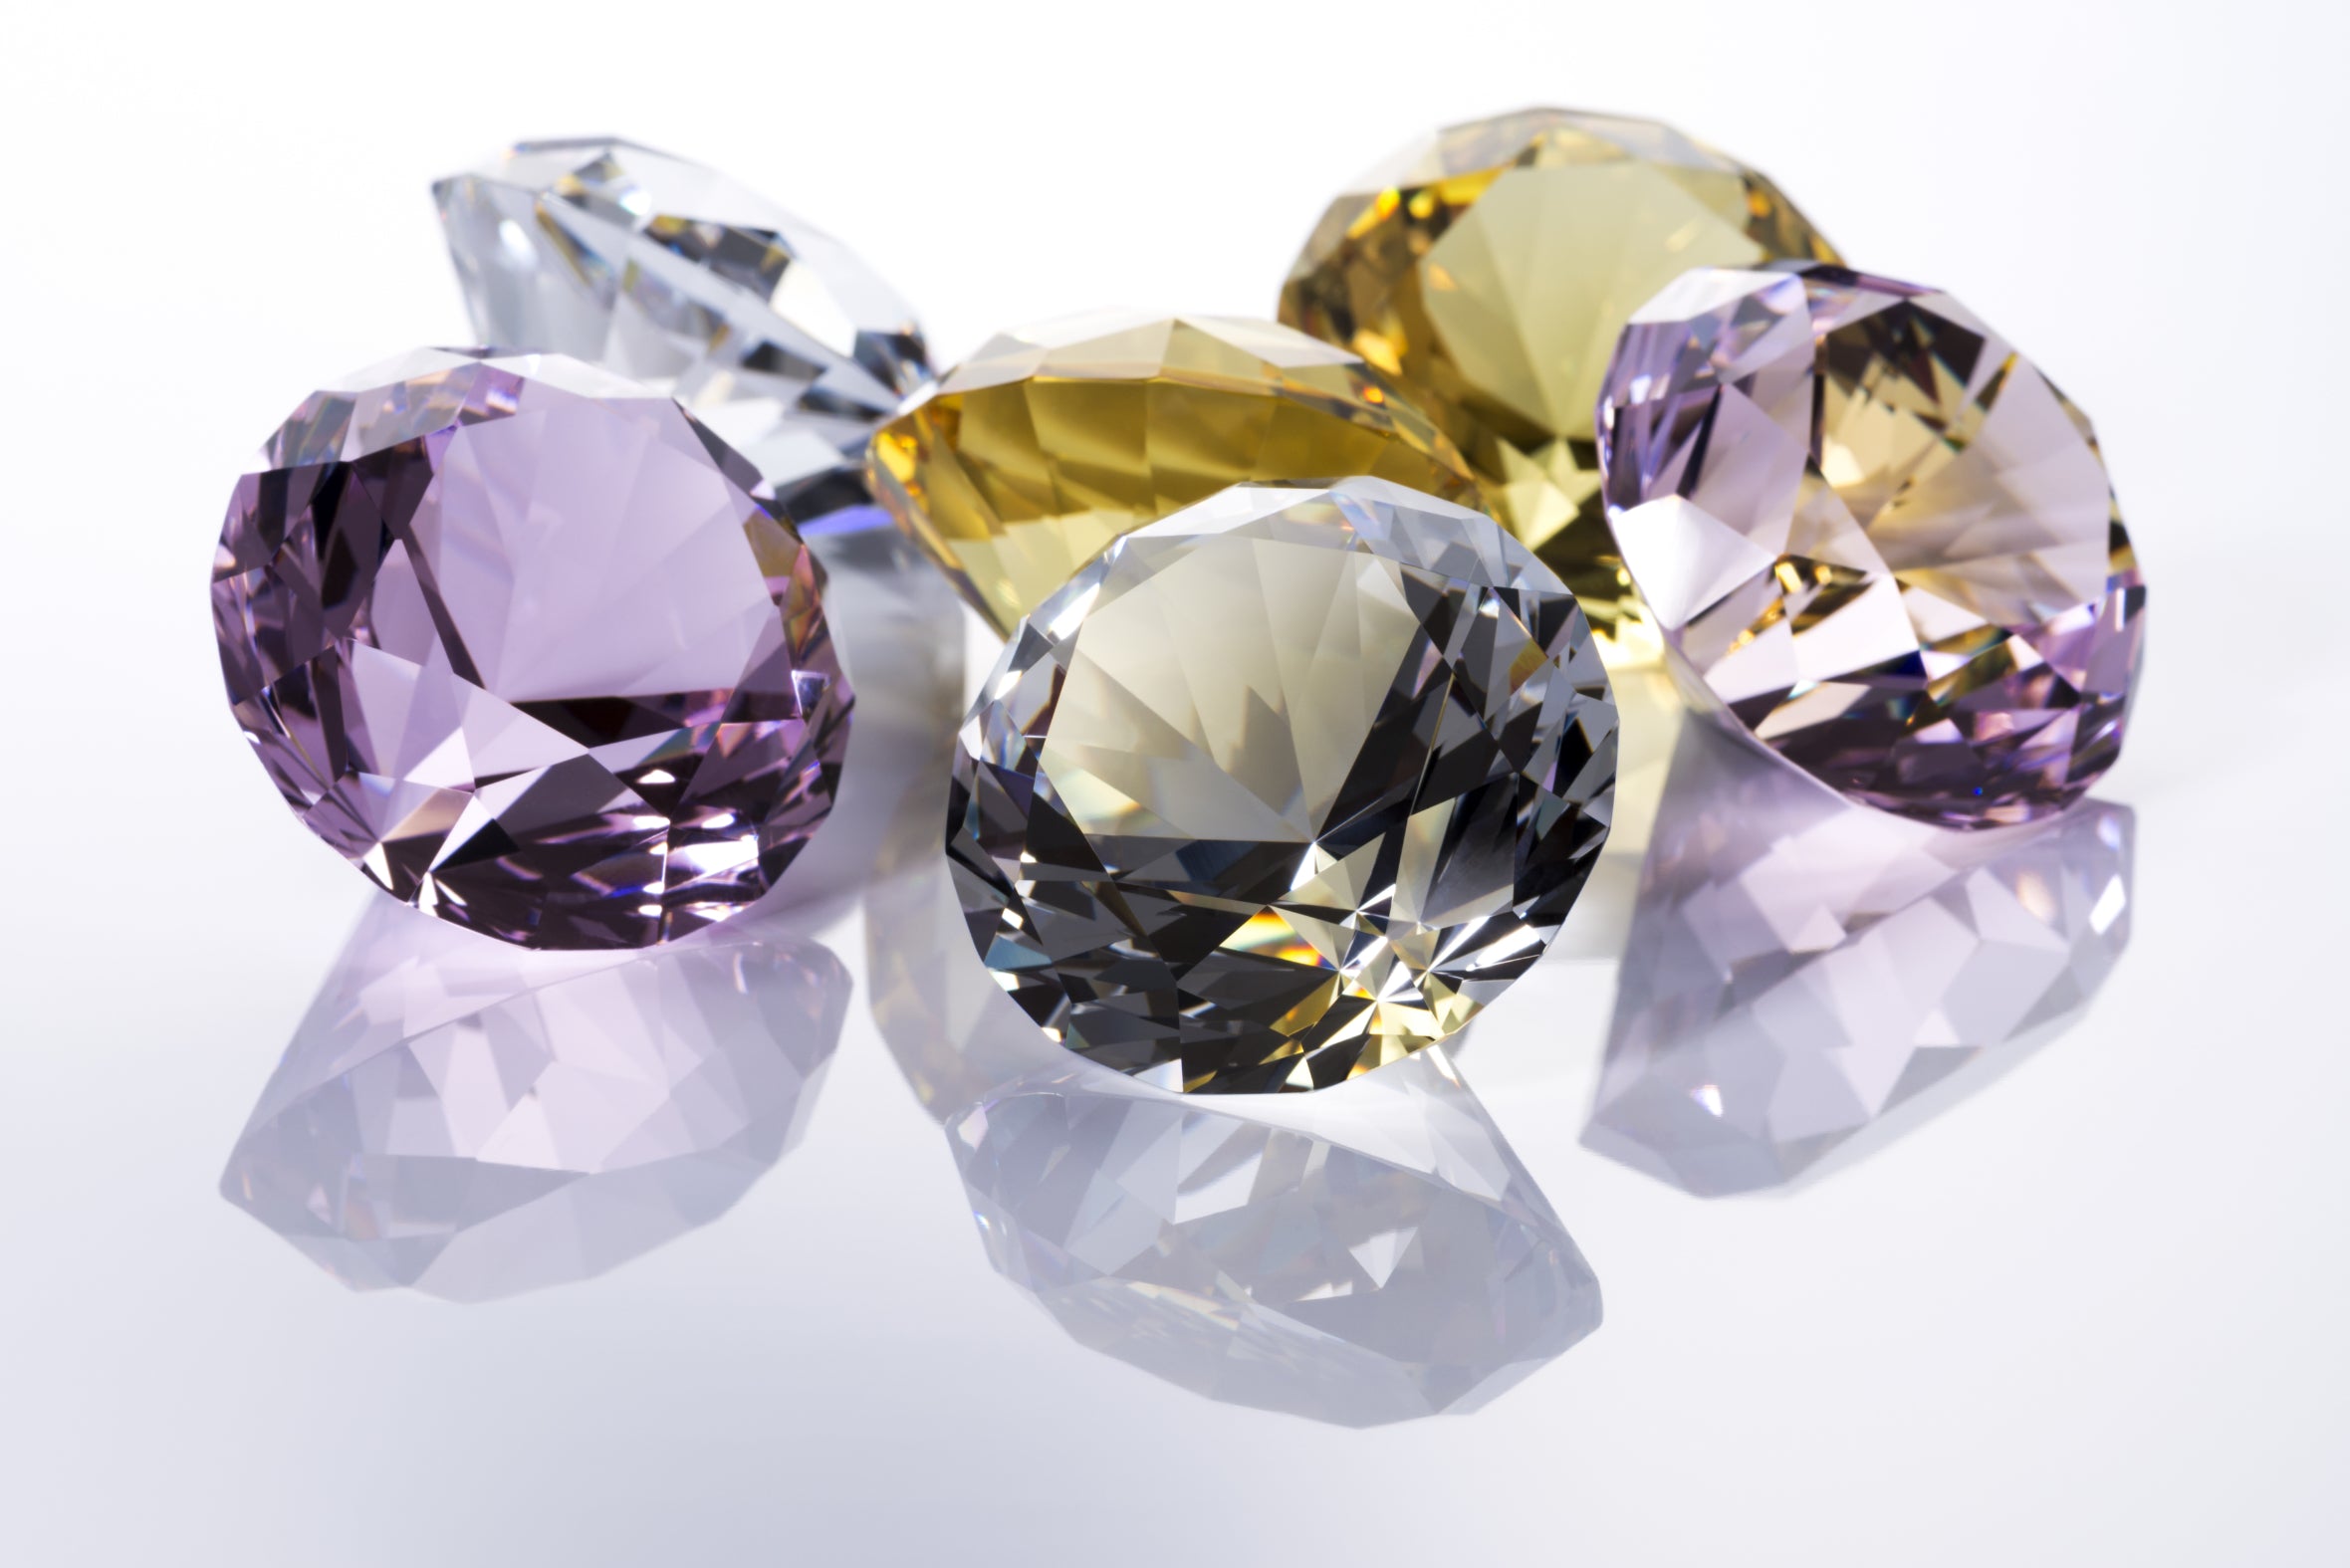 Sollte ich lieber in Edelsteine als in Diamanten investieren?